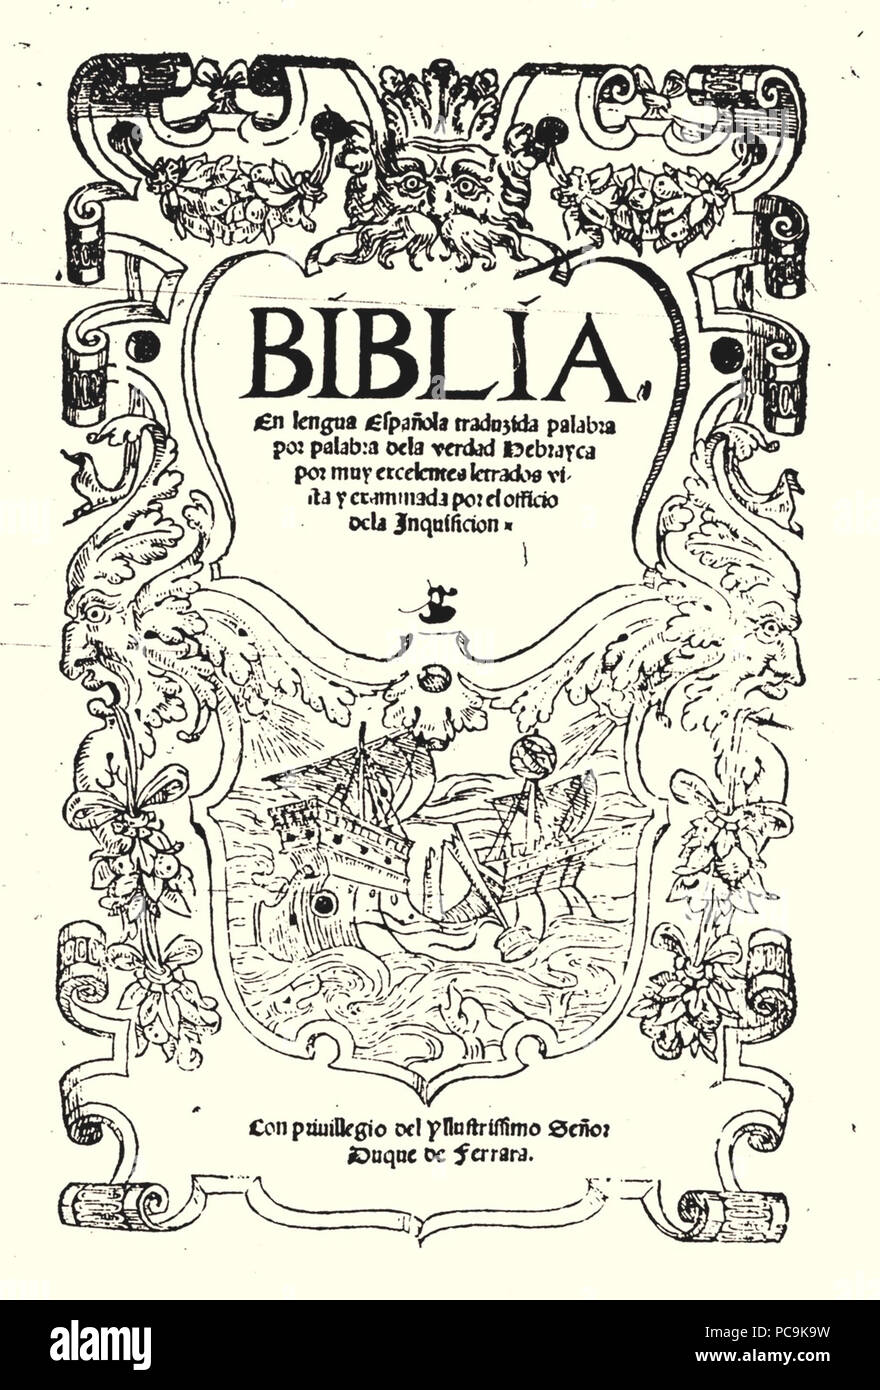 Pagina inicial de la biblia de Ferrara 463 Pagina inicial de la biblia de Ferrara Banque D'Images